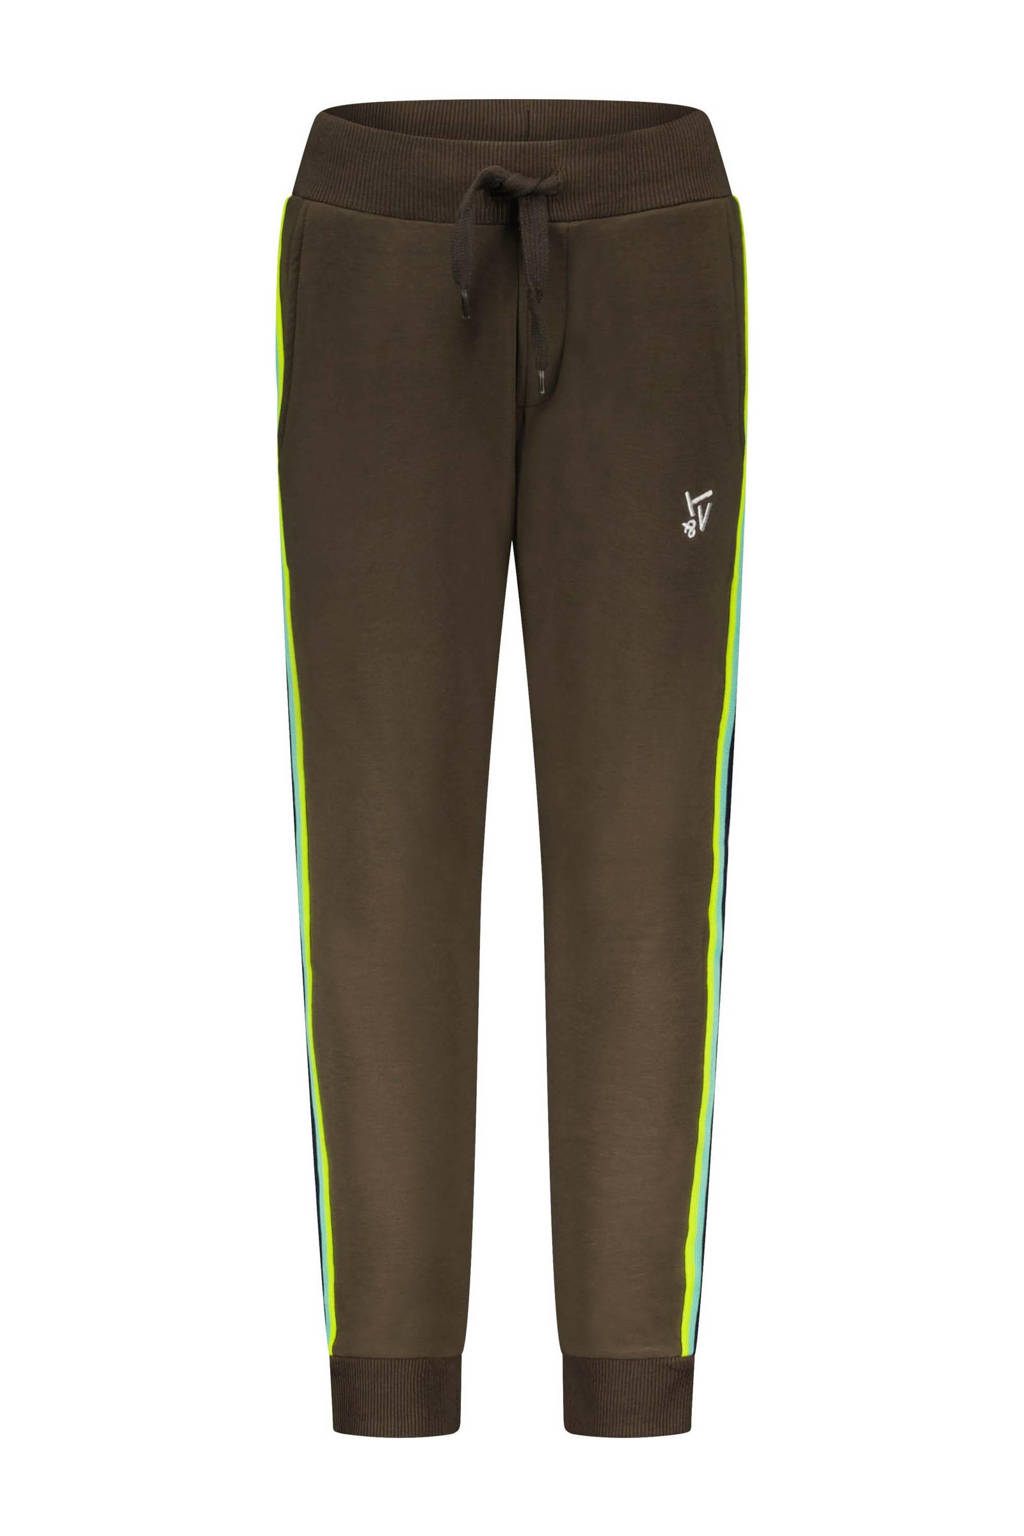 Groene jongens TYGO & vito slim fit joggingbroek van sweat materiaal met regular waist, elastische tailleband met koord en logo dessin